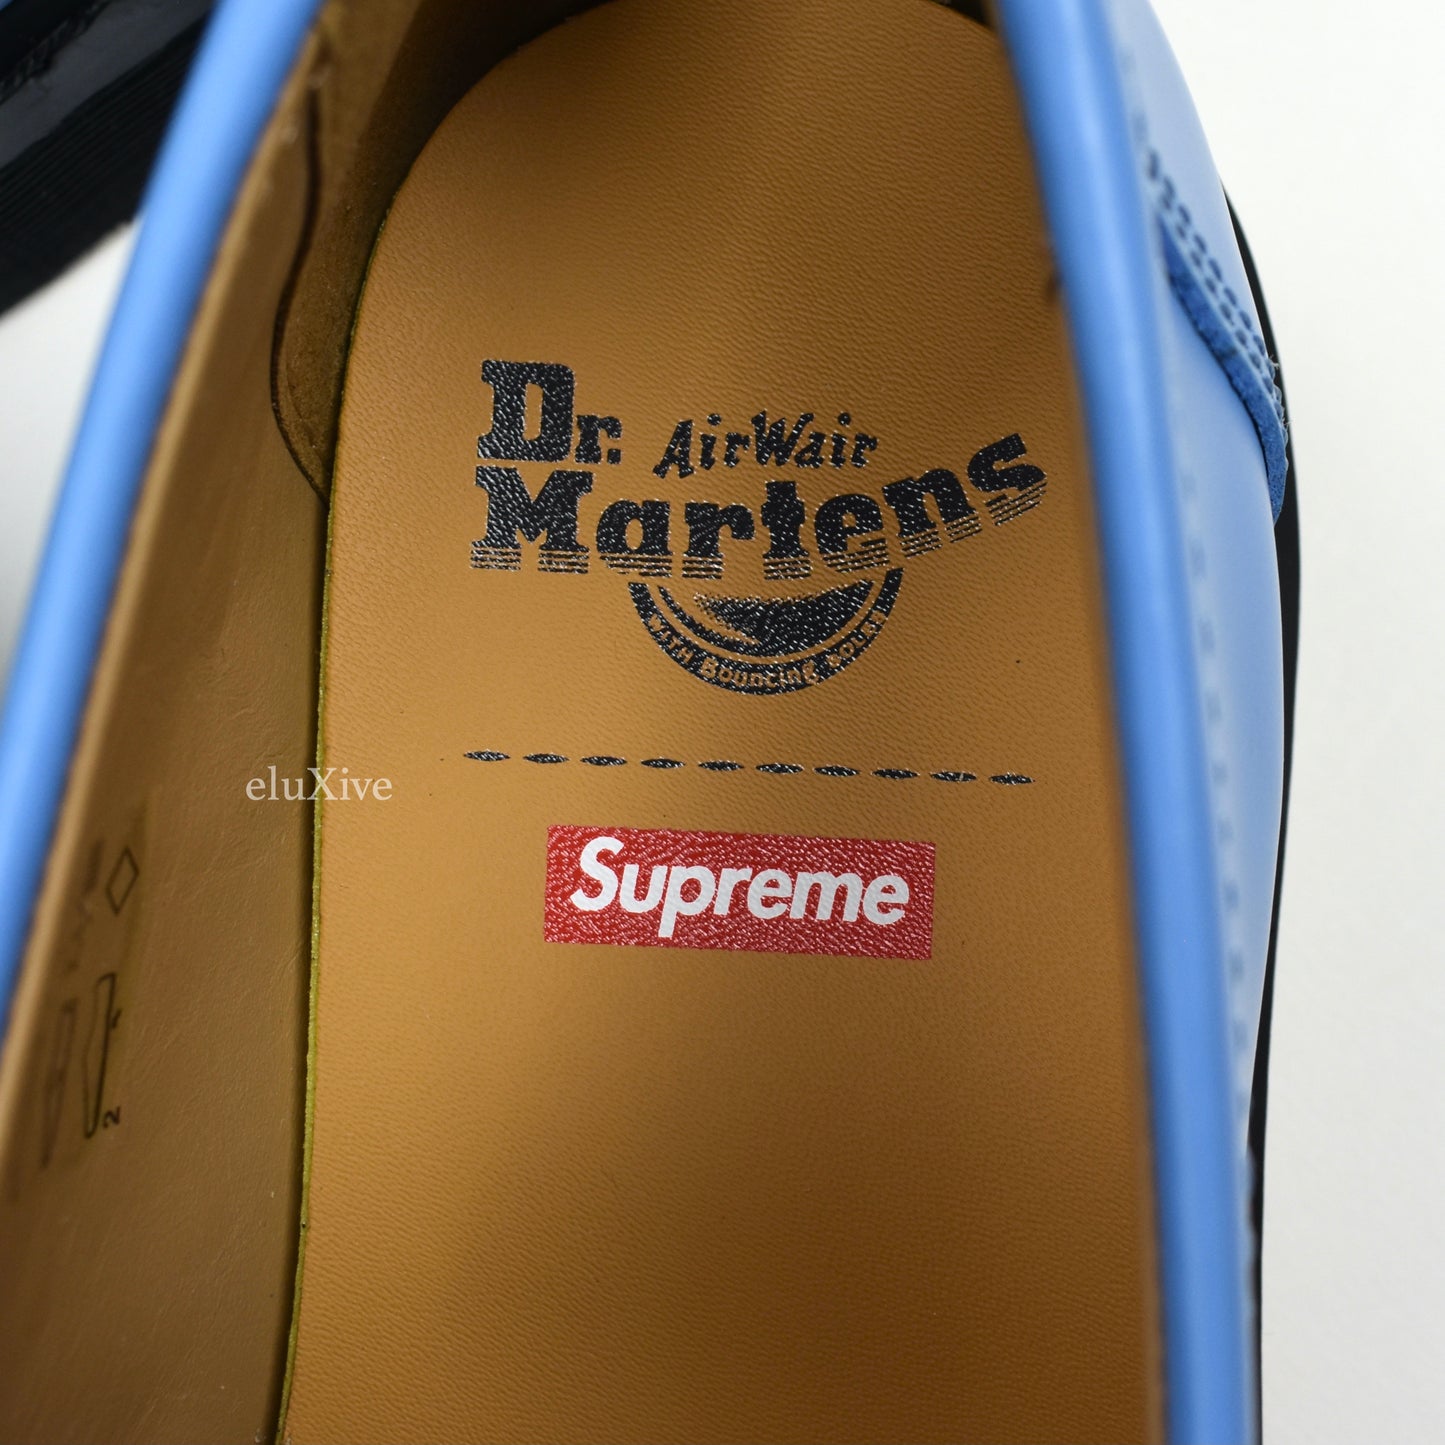 Supreme x Dr. Martens Blue Penton Tassel Loafers